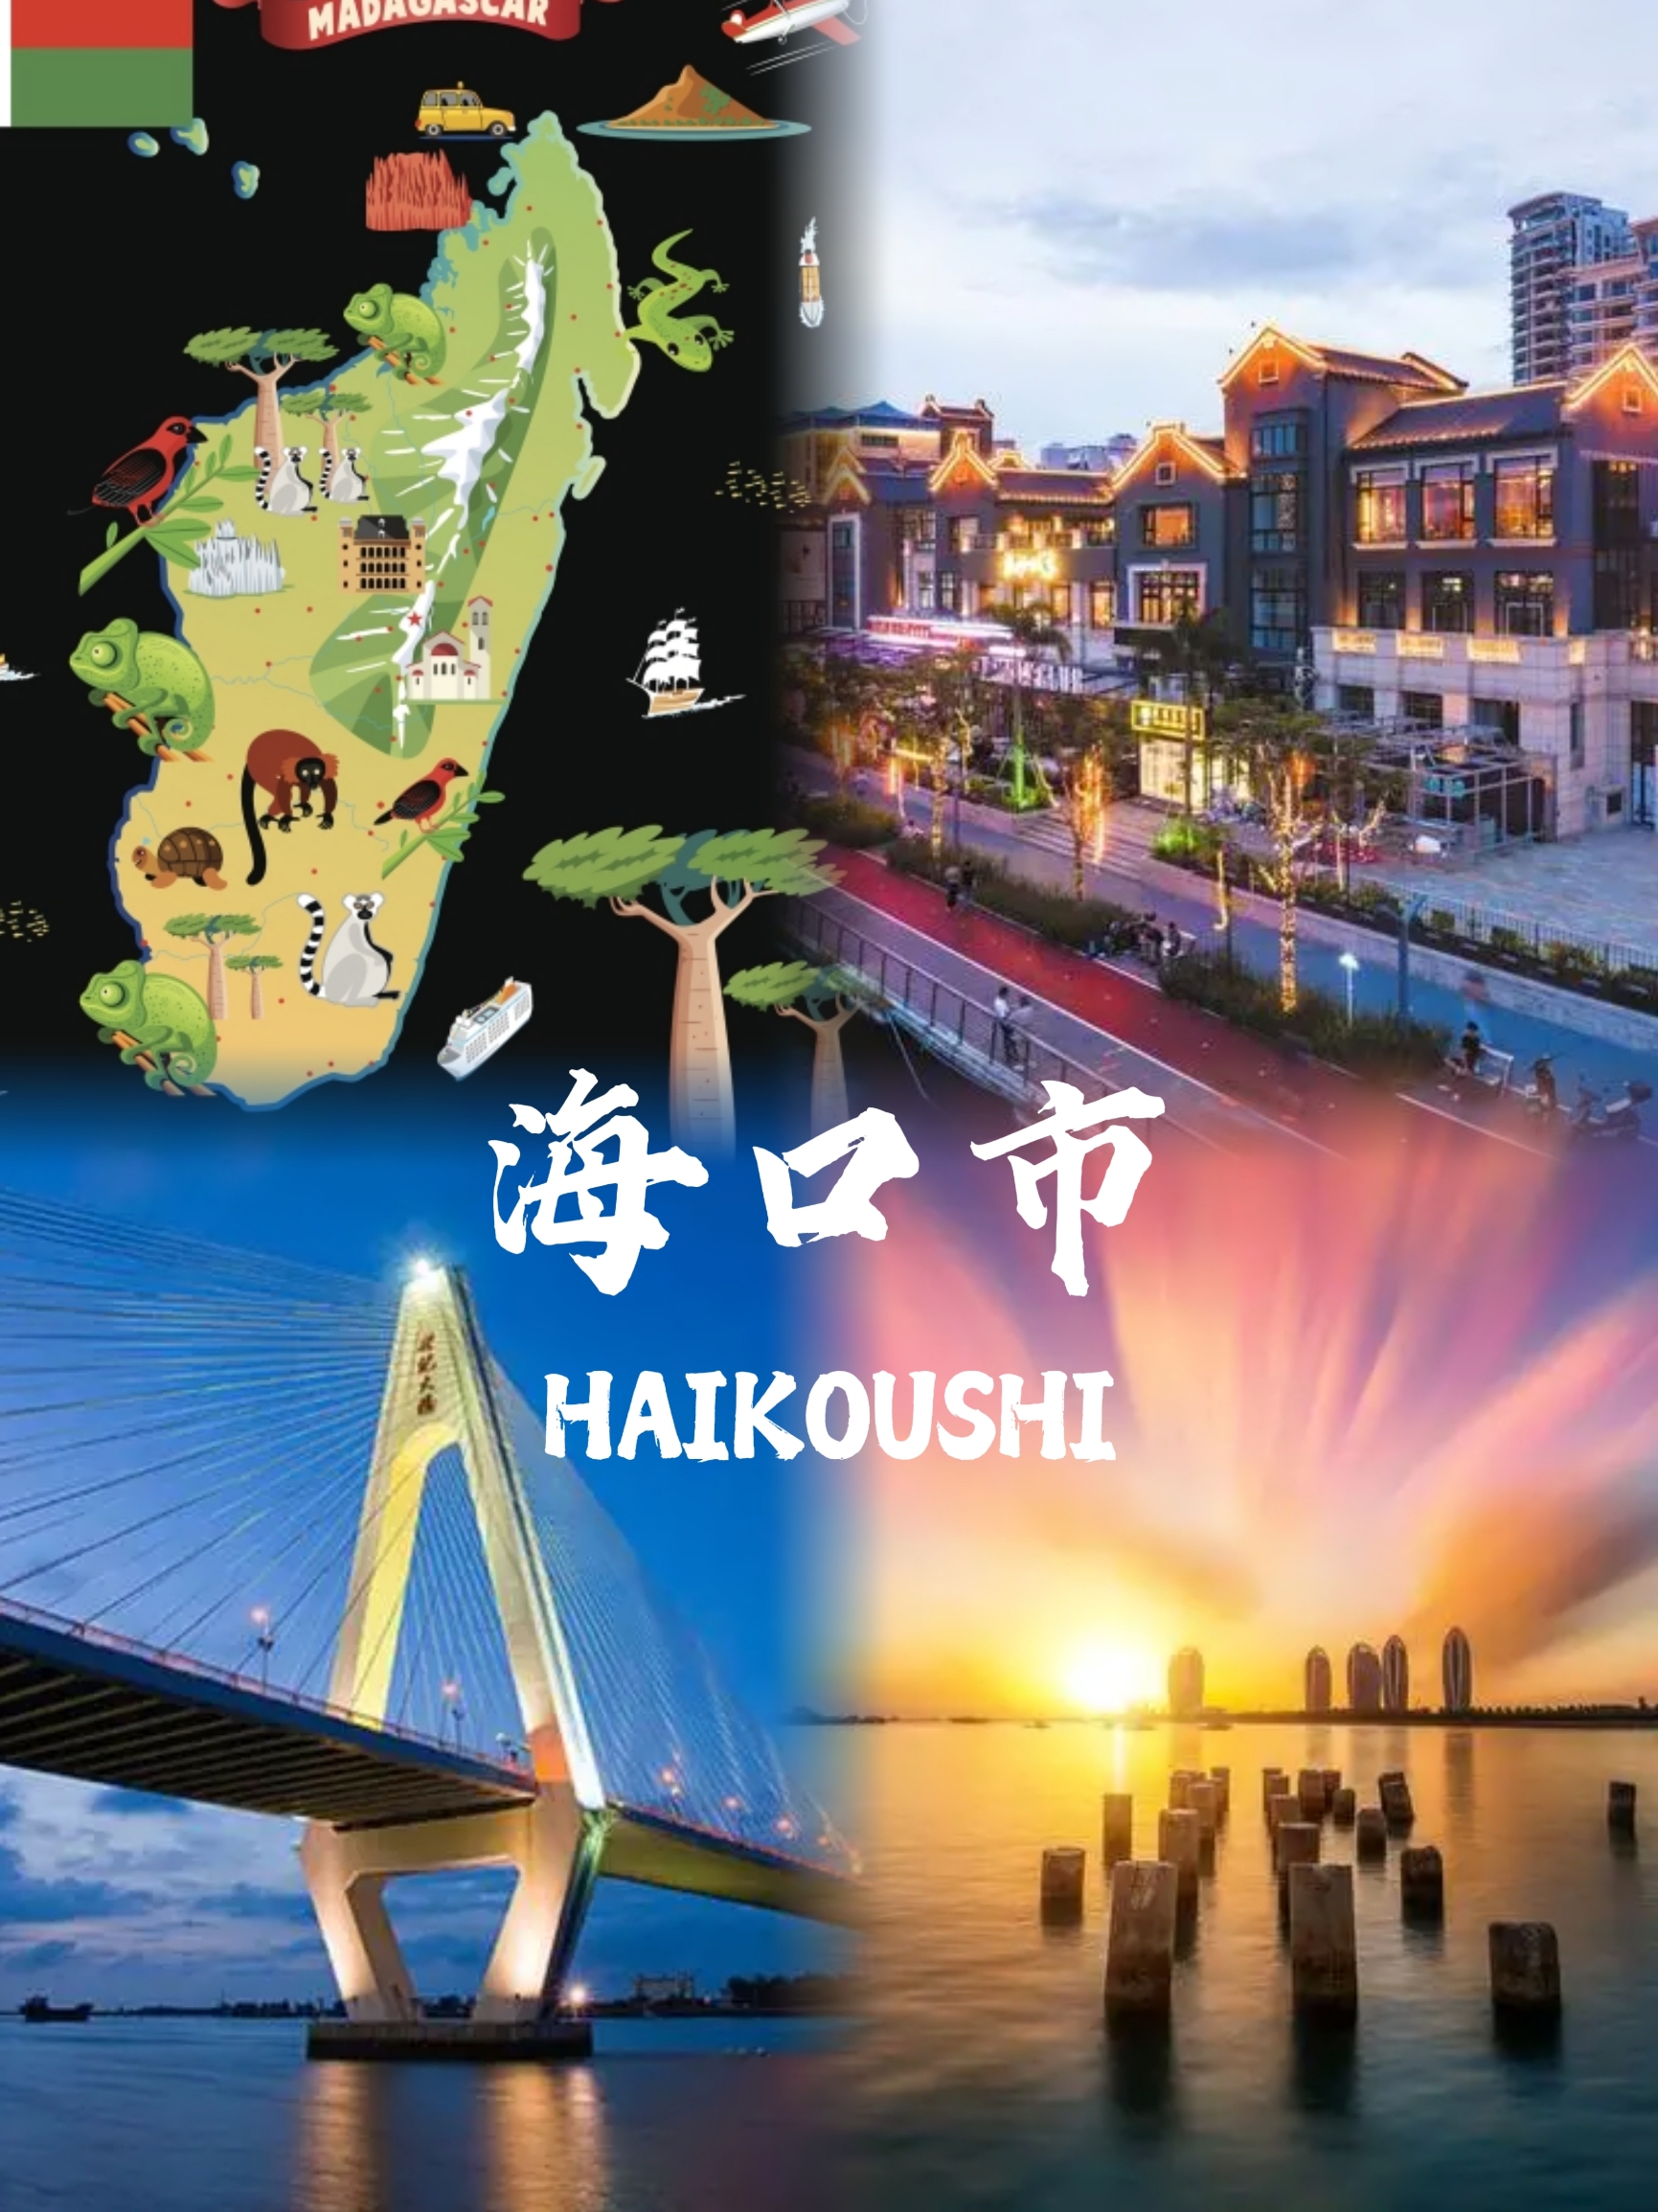 海口市是中国海南省的省会，位于海南岛的北部，是一个拥有丰富旅游资源的城市。以下是一份简要的海口市旅游